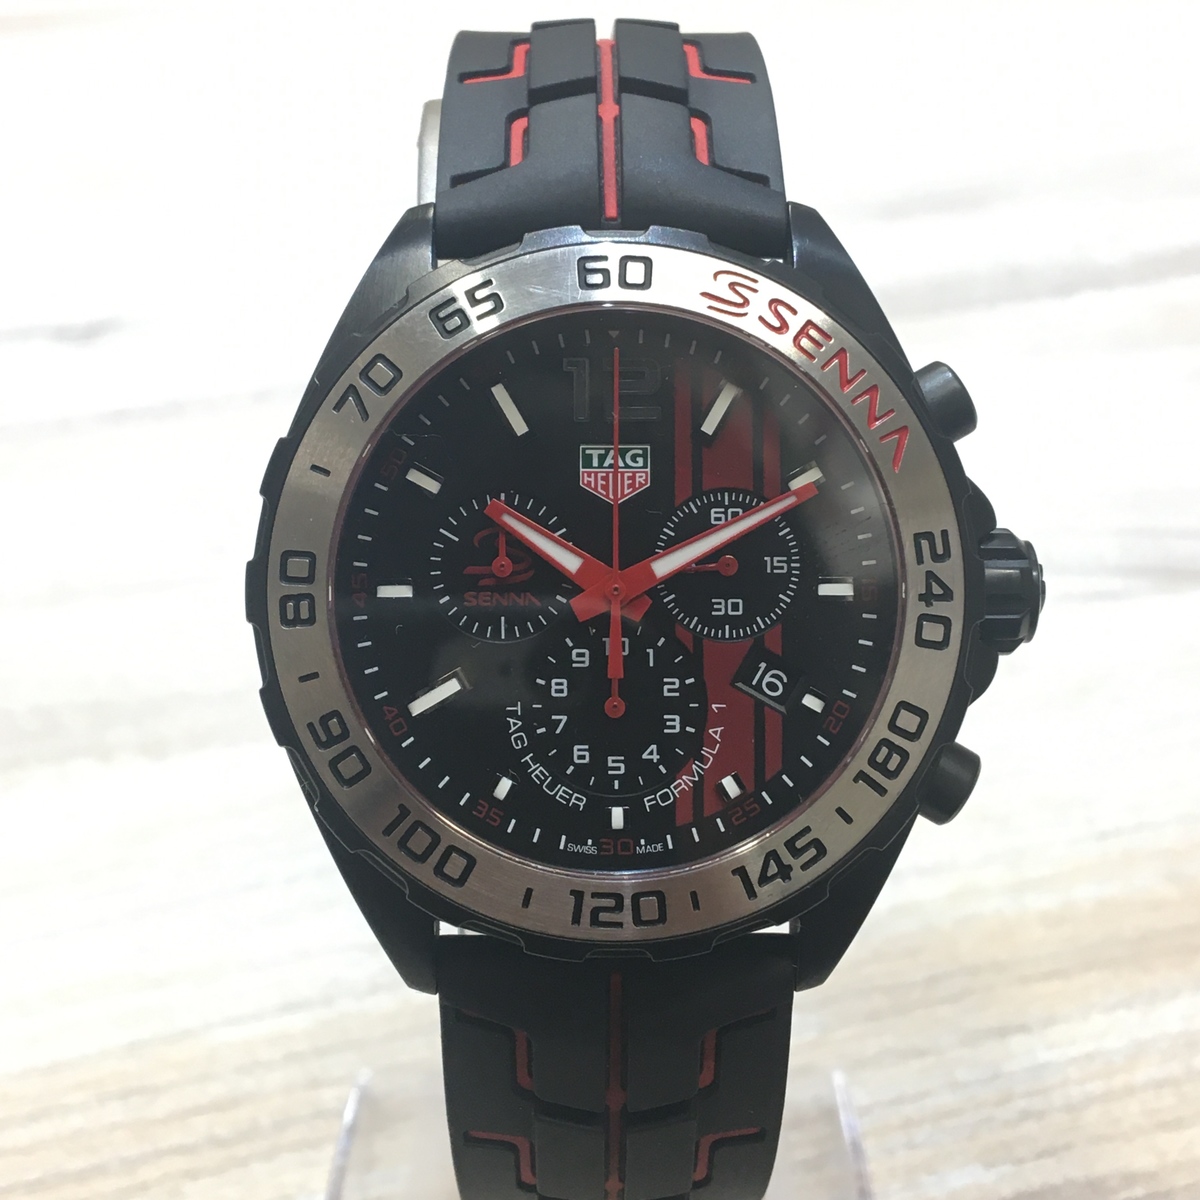 タグ・ホイヤーのCAZ1019.FT8027 フォーミュラ1 アイルトン セナ スペシャル エディション クロノグラフ 腕時計の買取実績です。